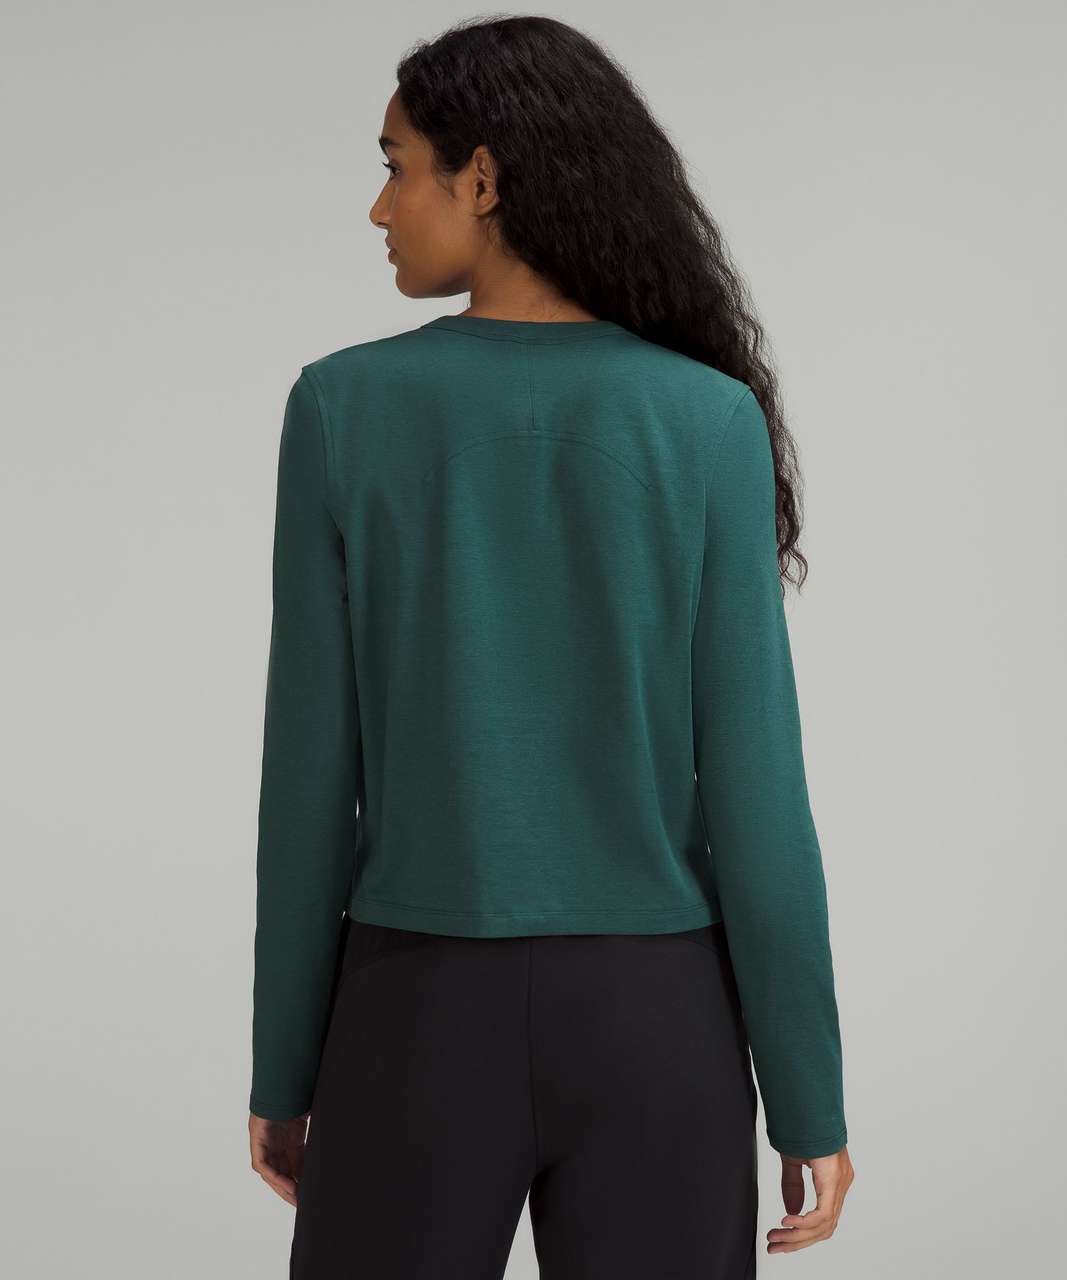 Lululemon Classic-Fit Cotton-Blend Long Sleeve Shirt - Green Jasper